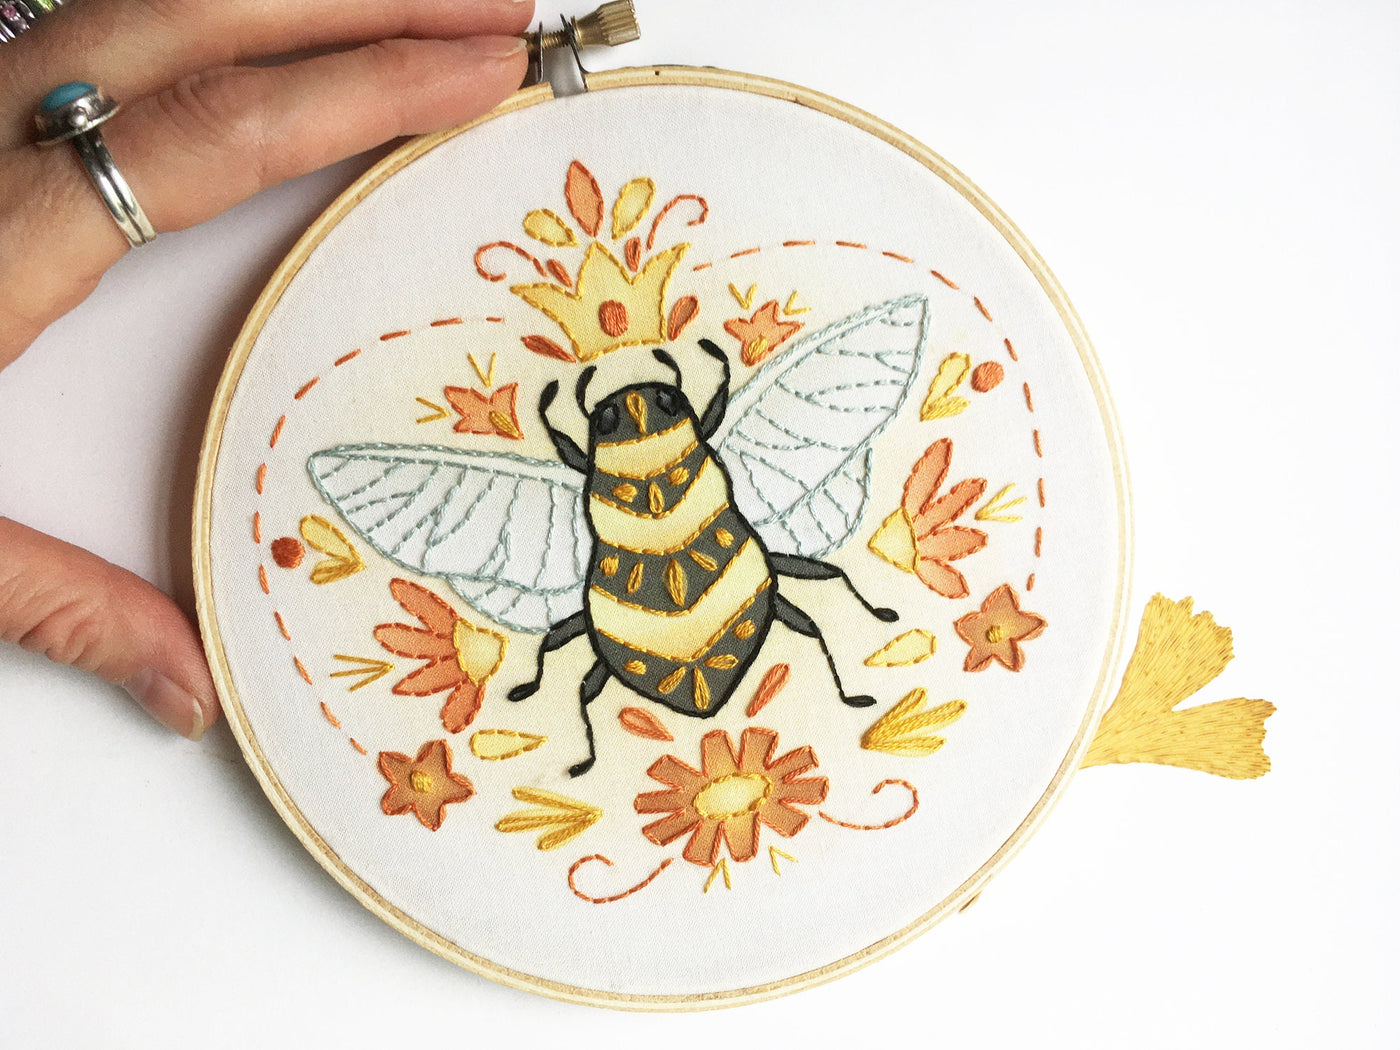 Queen Bee Beginner hand embroidery Complete Kit